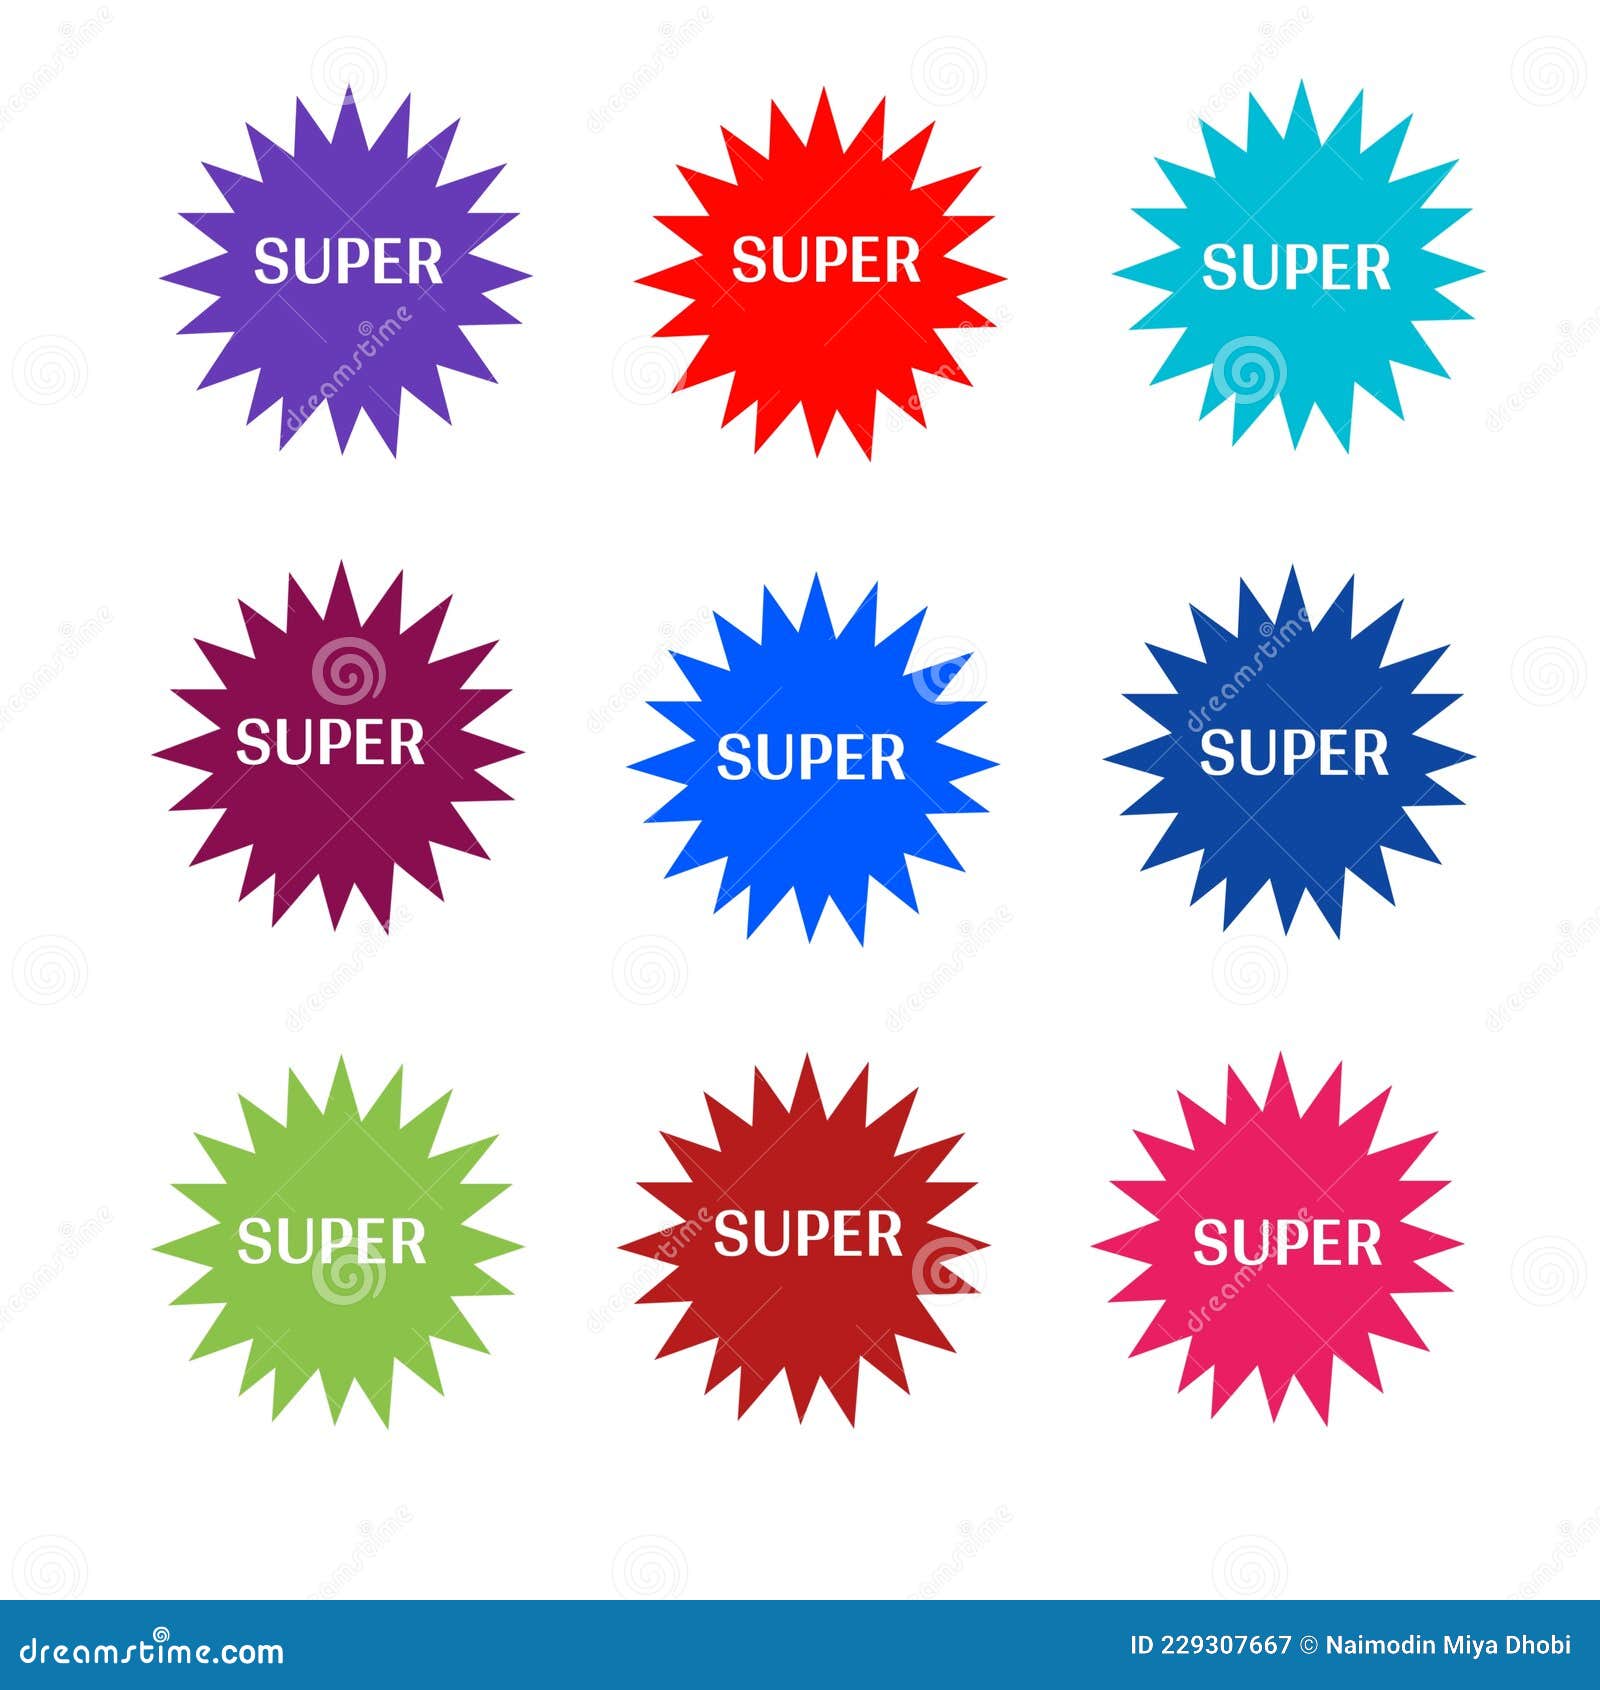 Star - Super Star Stickers - SuperStickers